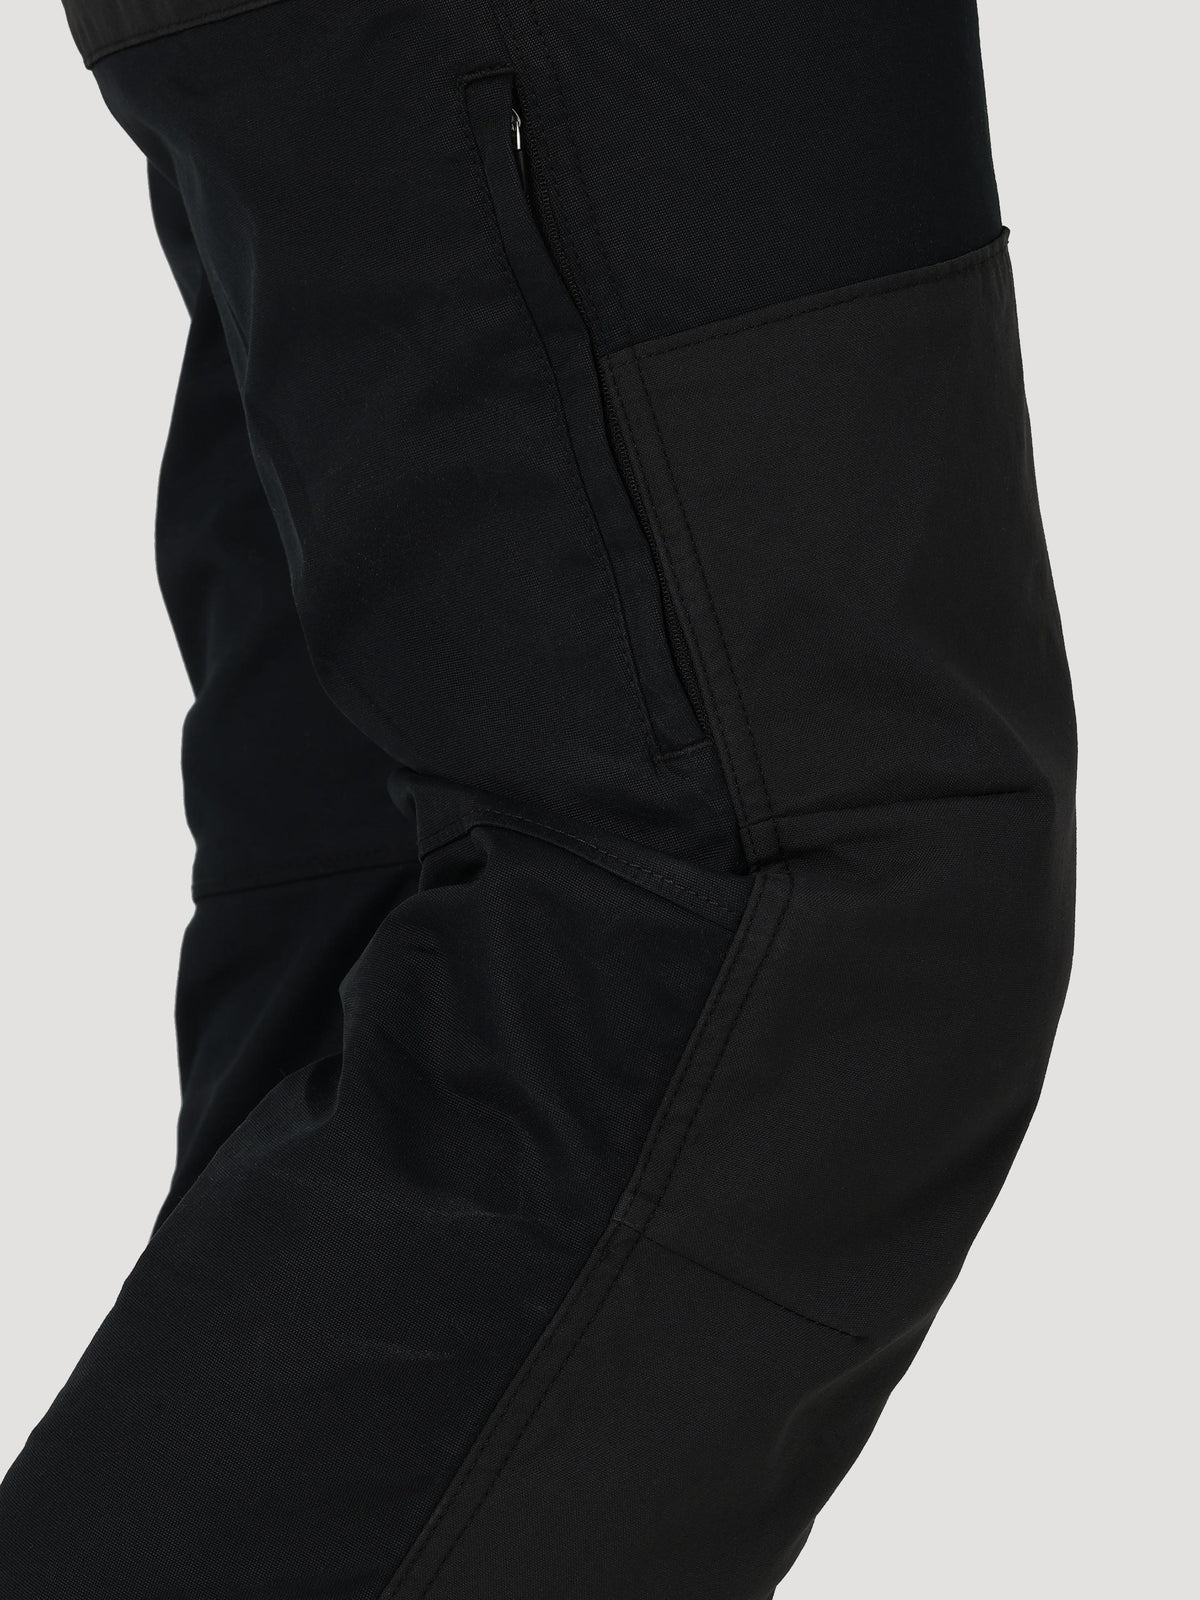 All Terrain Gear Reinforced Softshell Pant in Black